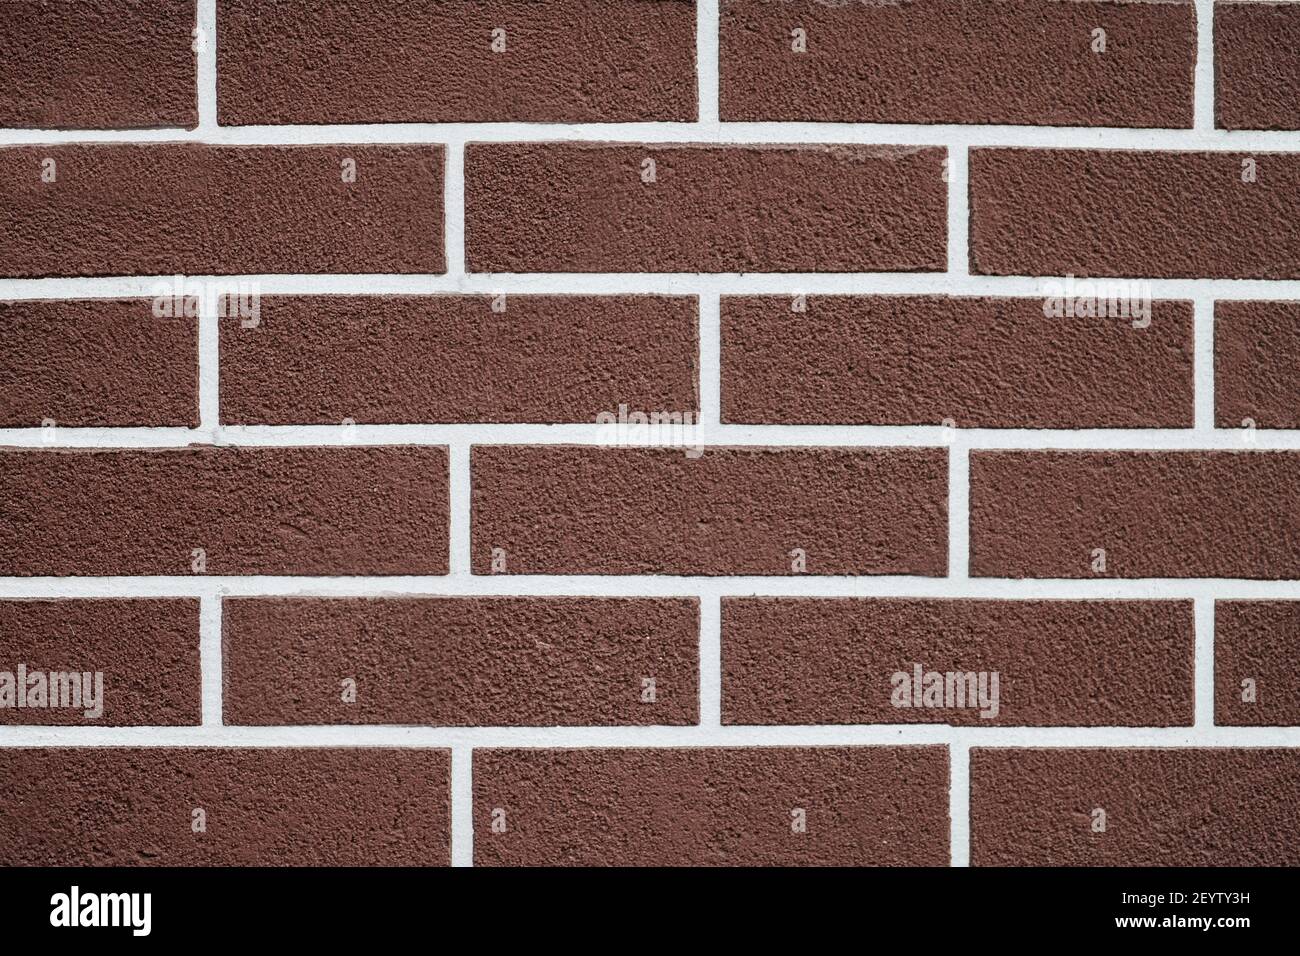 Mur de briques marron avec motif de lignes de coulis blanches. Arrière-plan de texture de brique abstraite. Extérieur de la nouvelle maison. Style loft. Banque D'Images